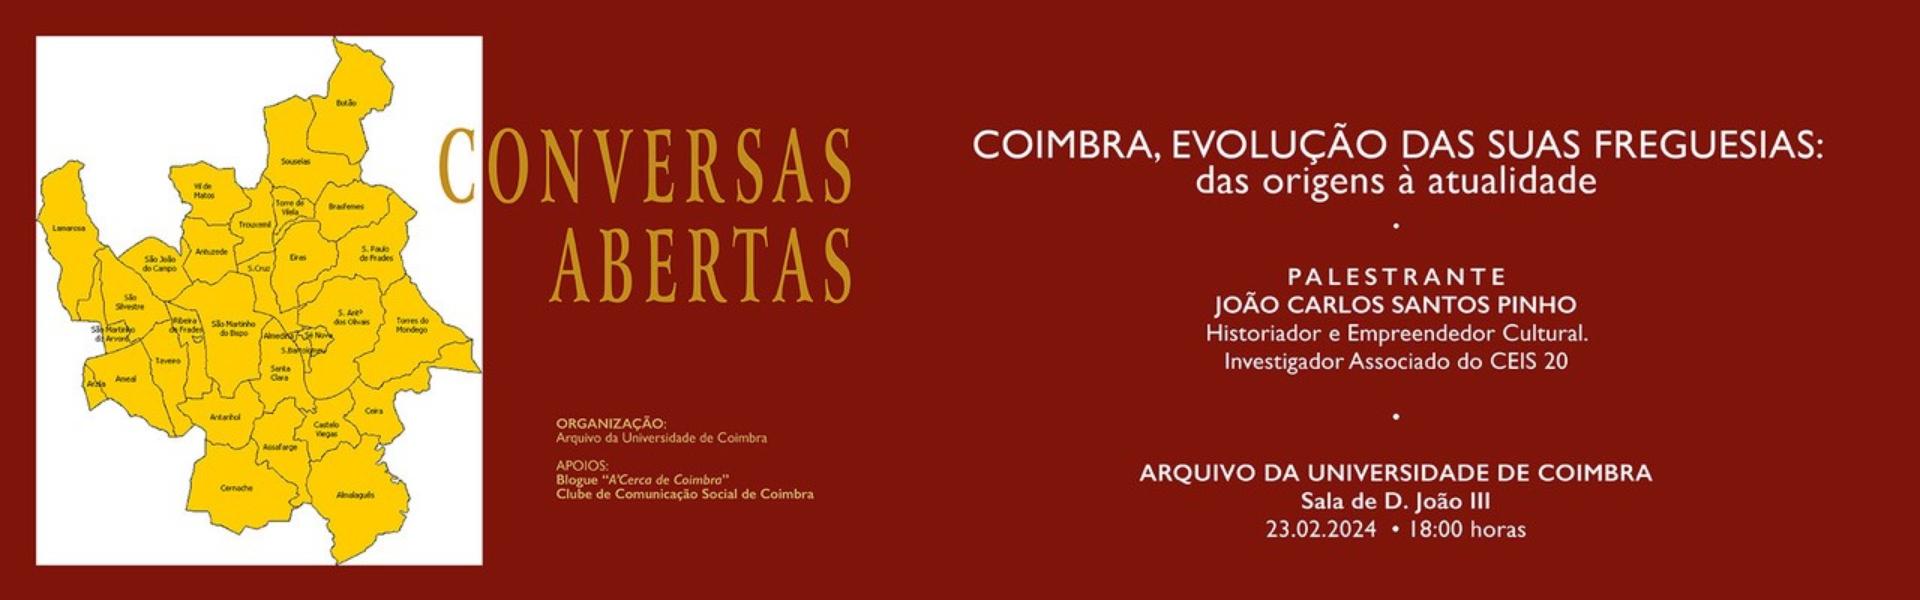 CONVERSAS ABERTAS  - COIMBRA, evolução das suas freguesias: das origens à atualidade